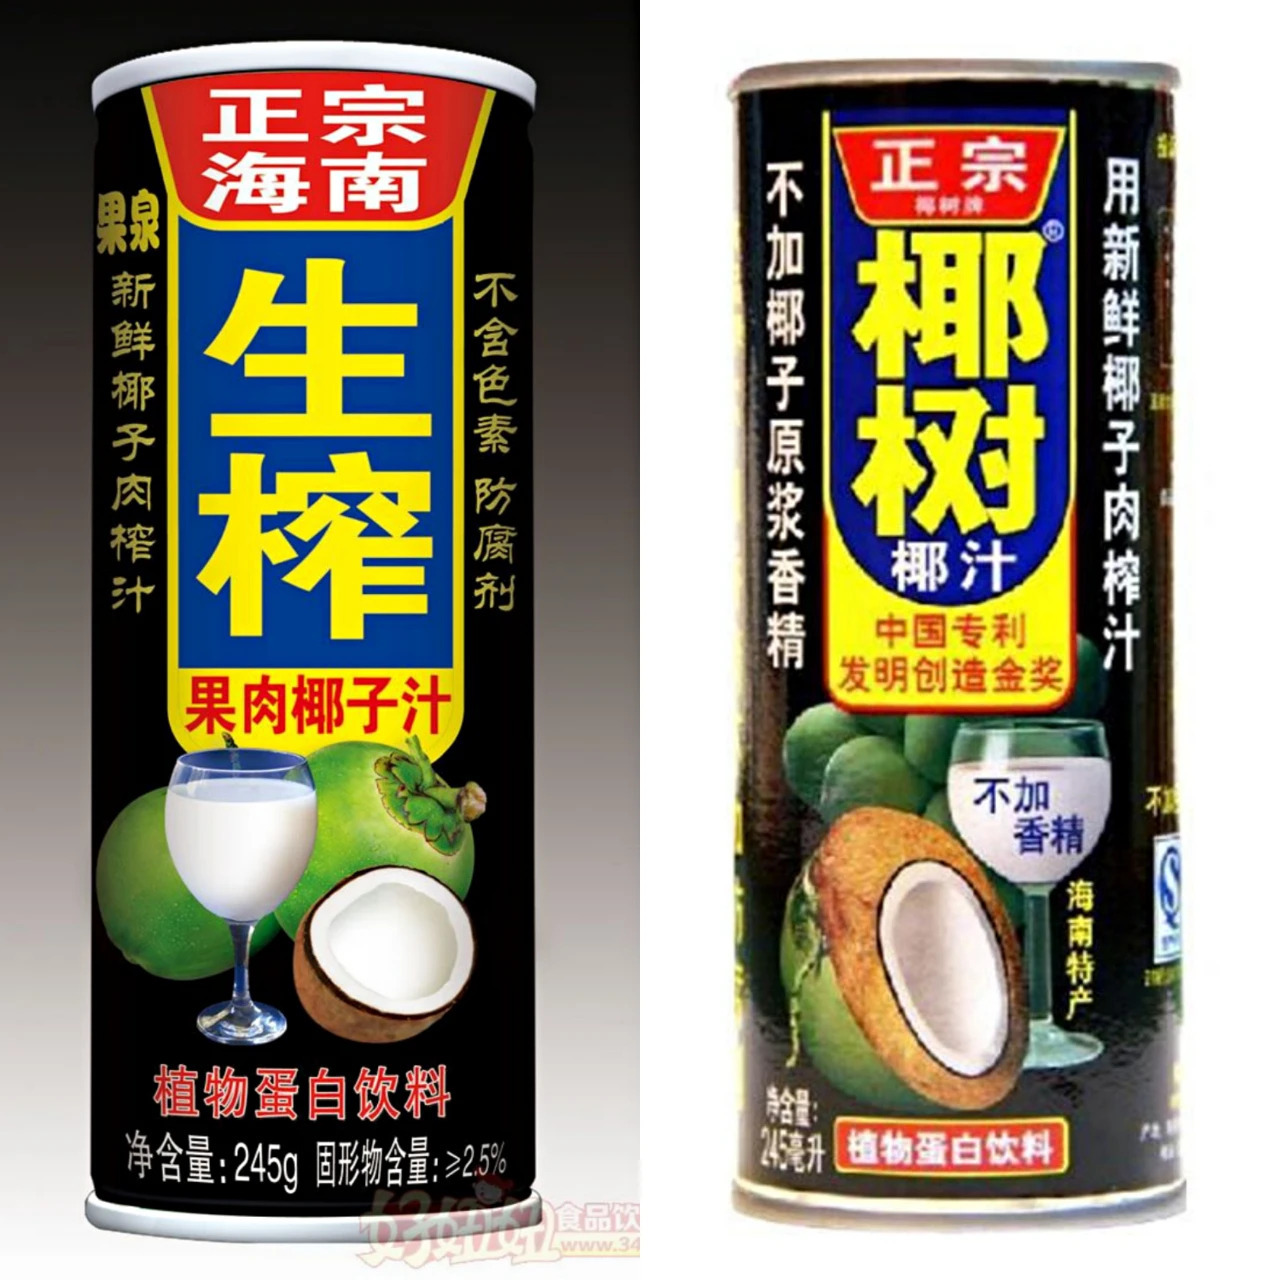 土味的“椰树牌”营销，想要山寨不容易！